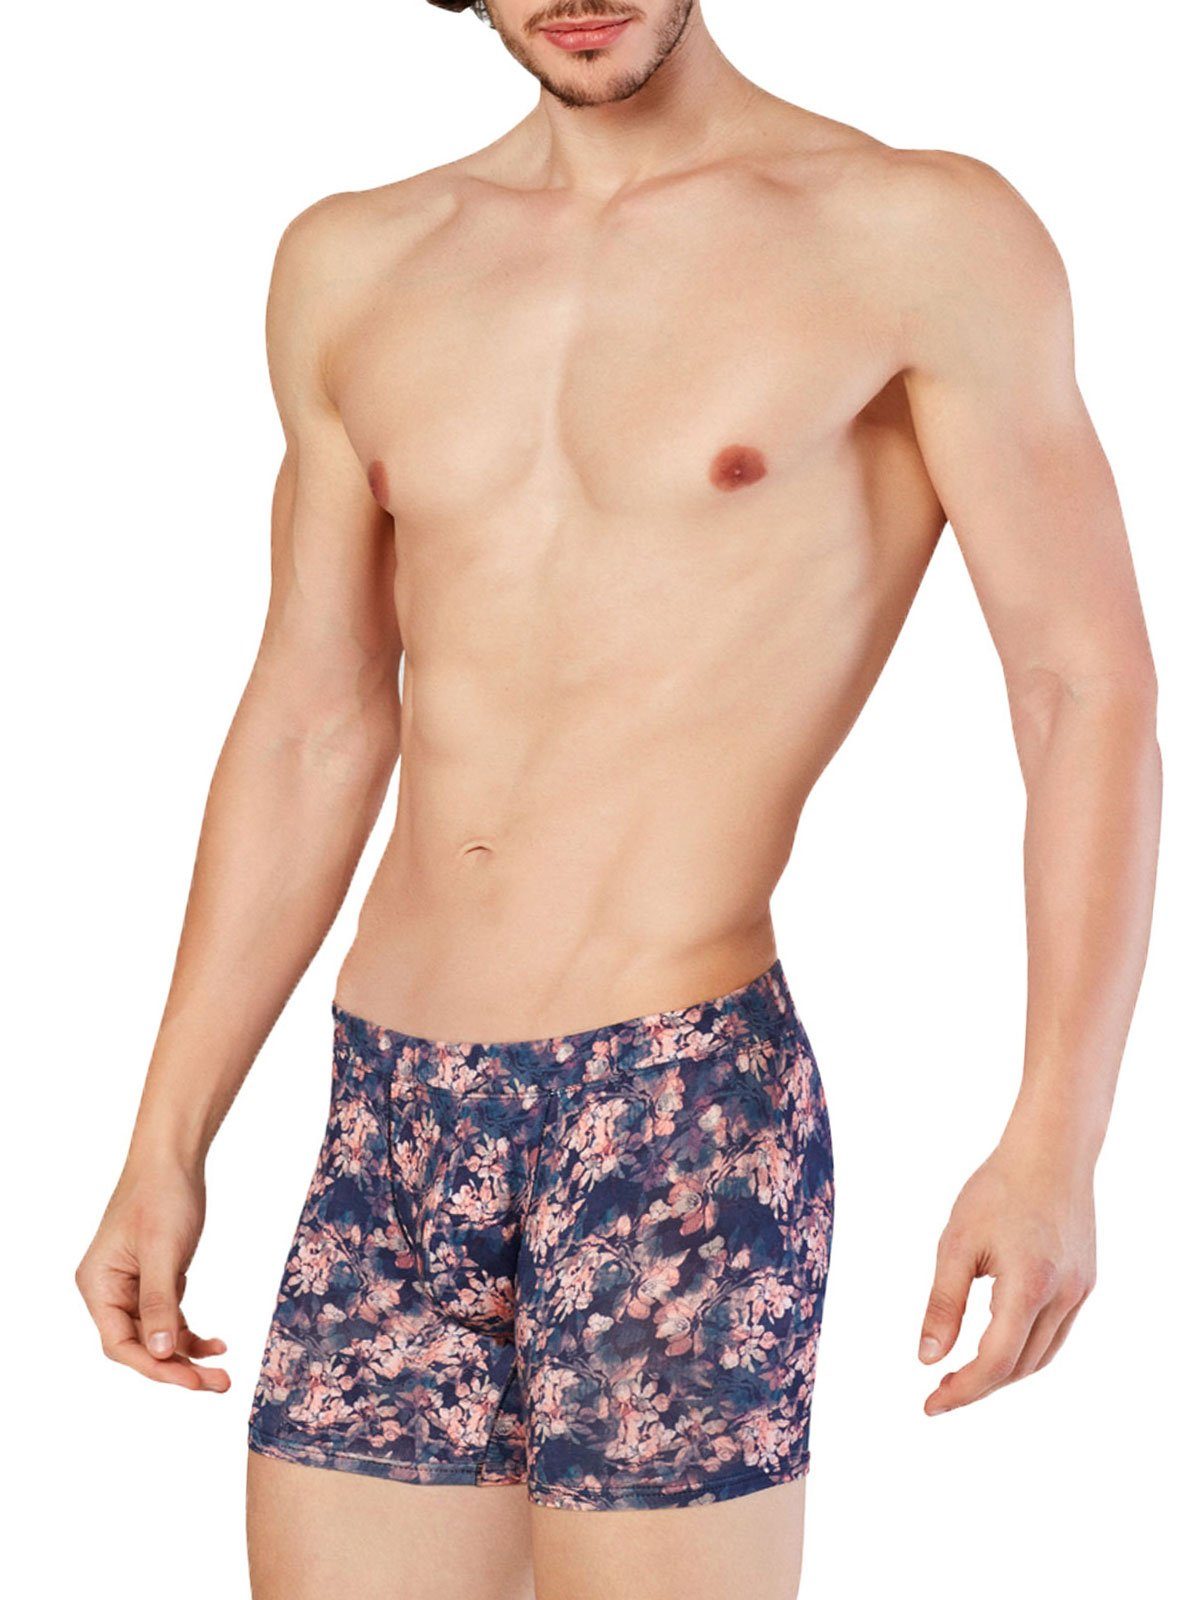 Doreanse Underwear Boxershorts Imprime Herren Hipster Pants Wild Flower, M, DA1856